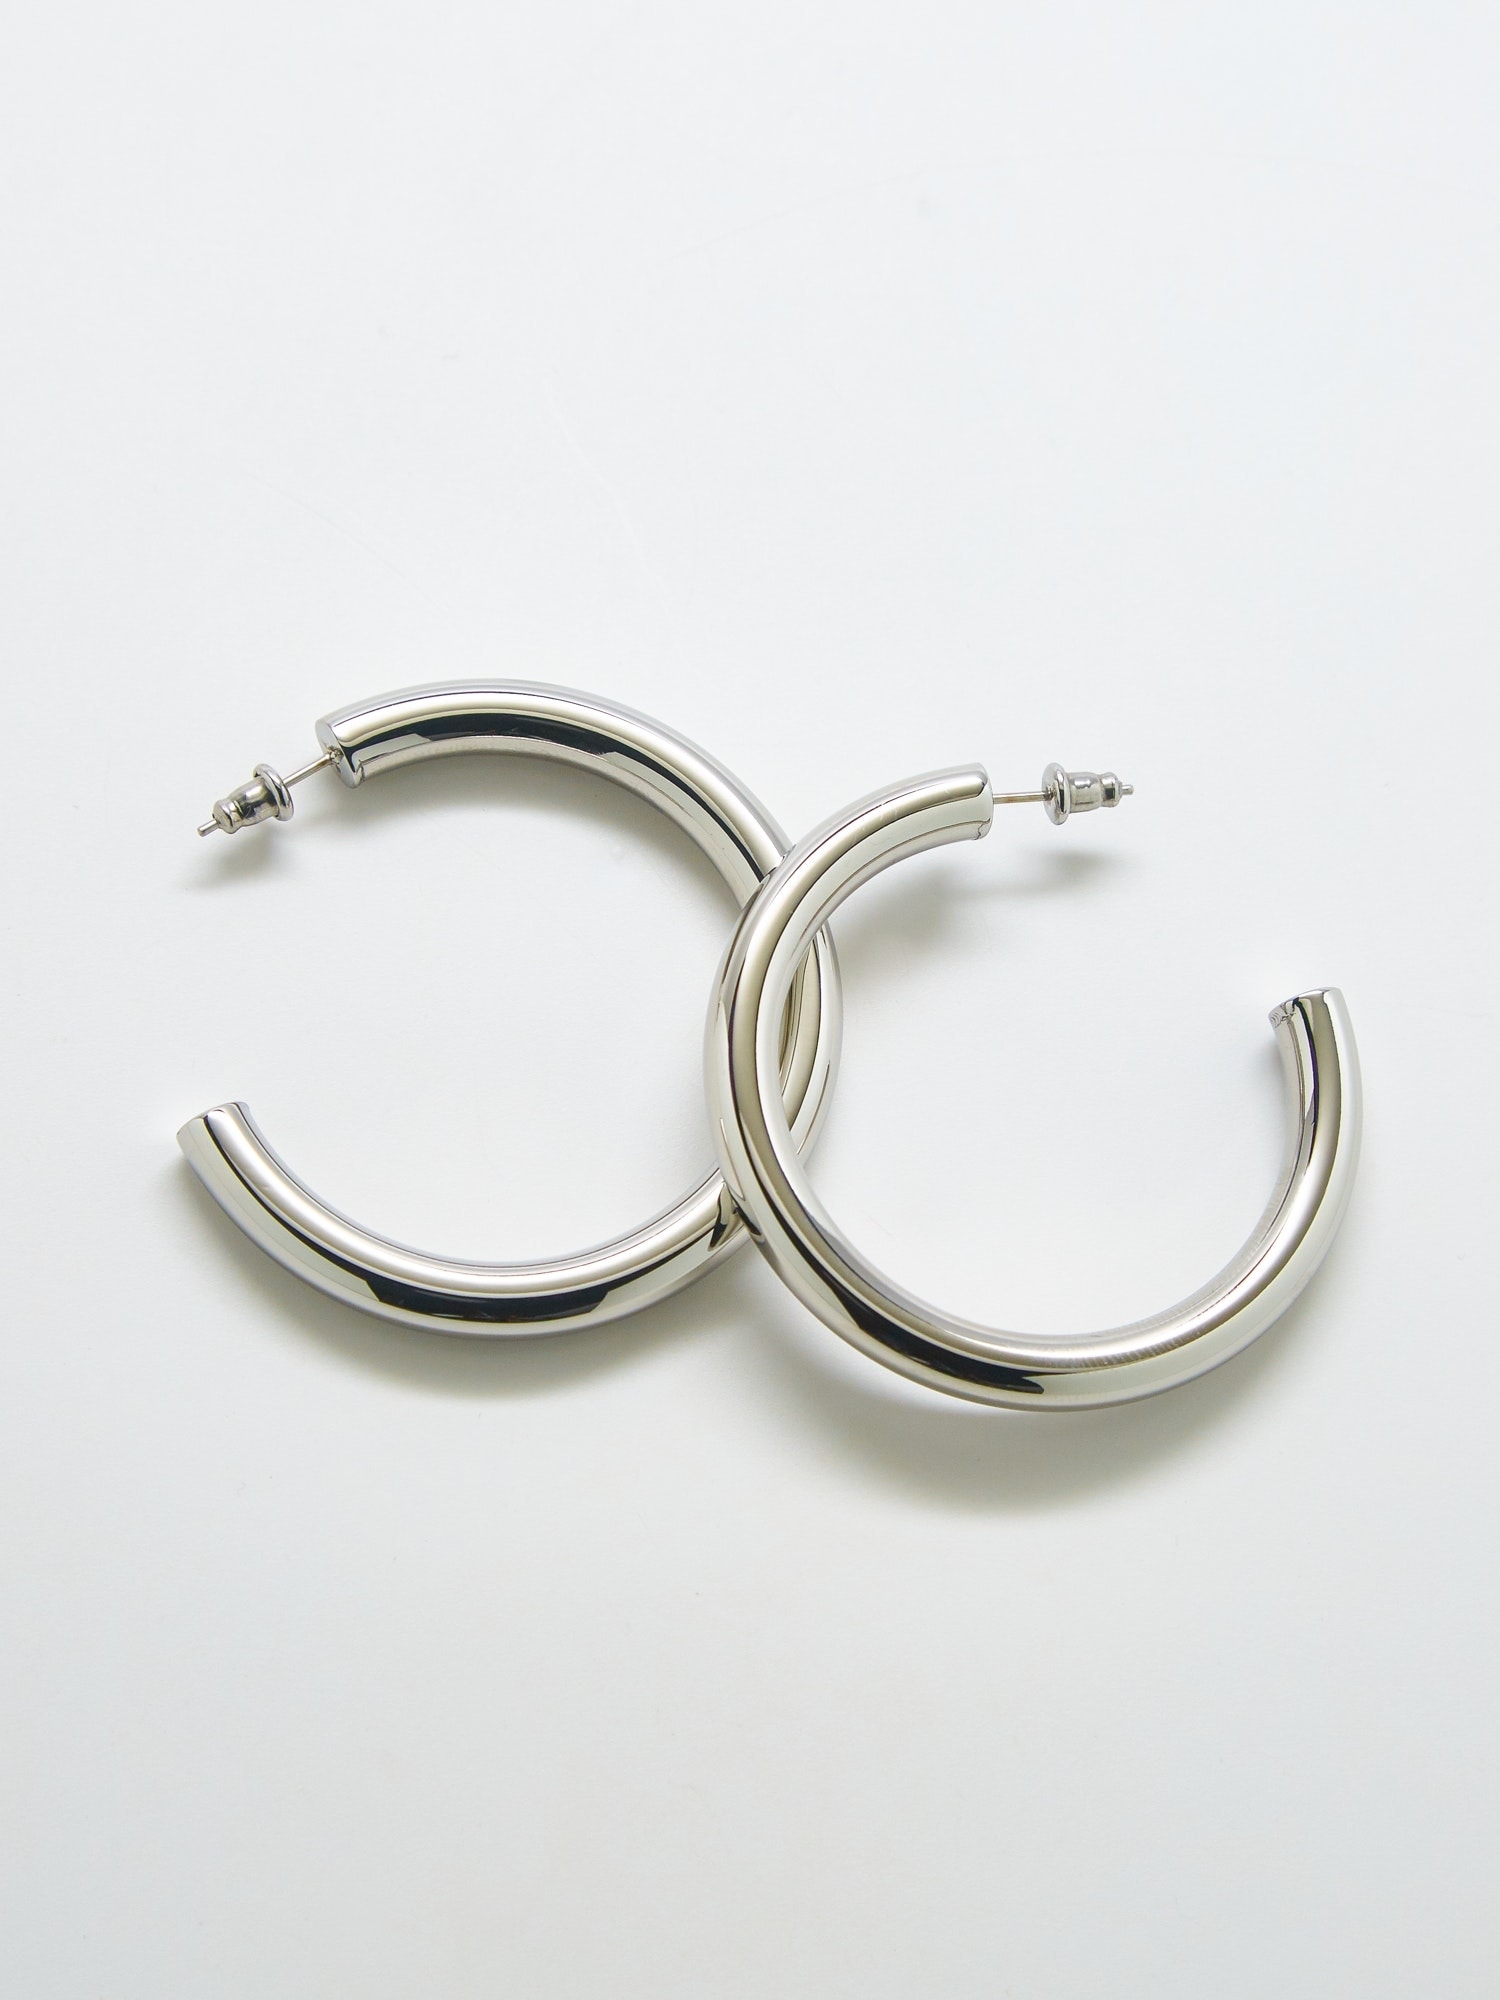 Tiny Sterling Silver Crystal Stud Earrings | Lisa Angel